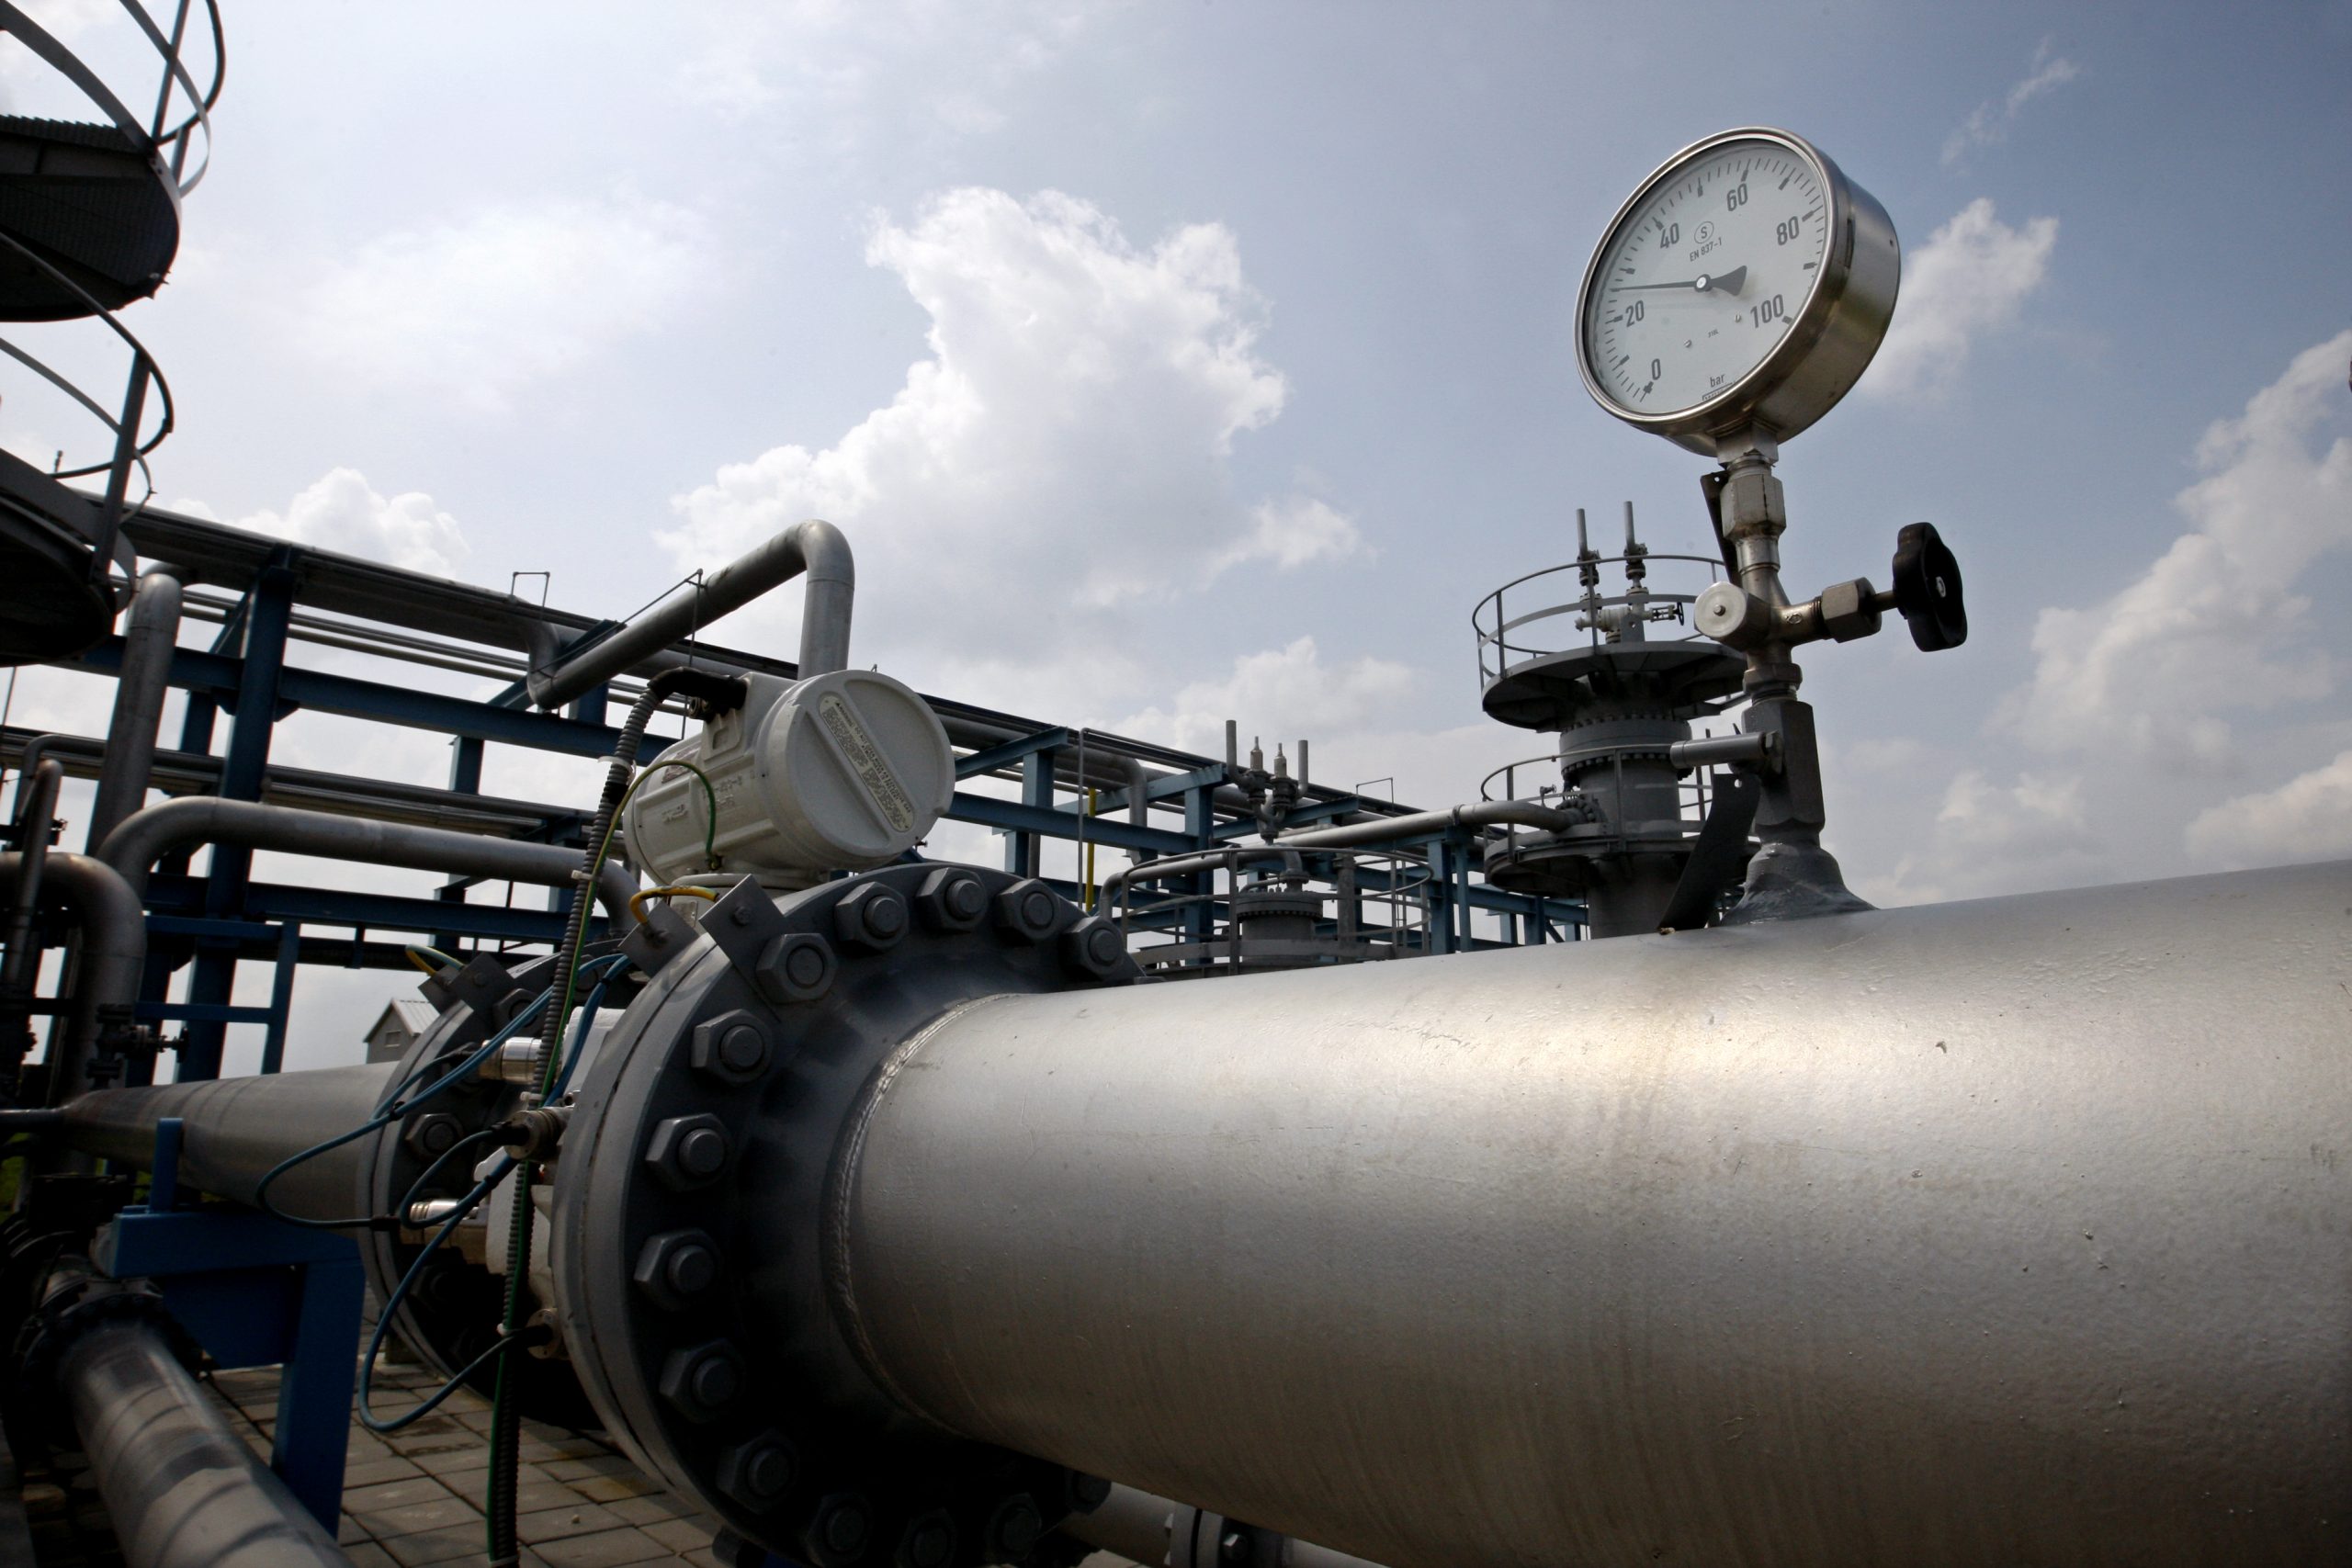 Fertigstellungstermin des OB3-Gaspipeline-Projekts in Nigeria auf 2021 verschoben